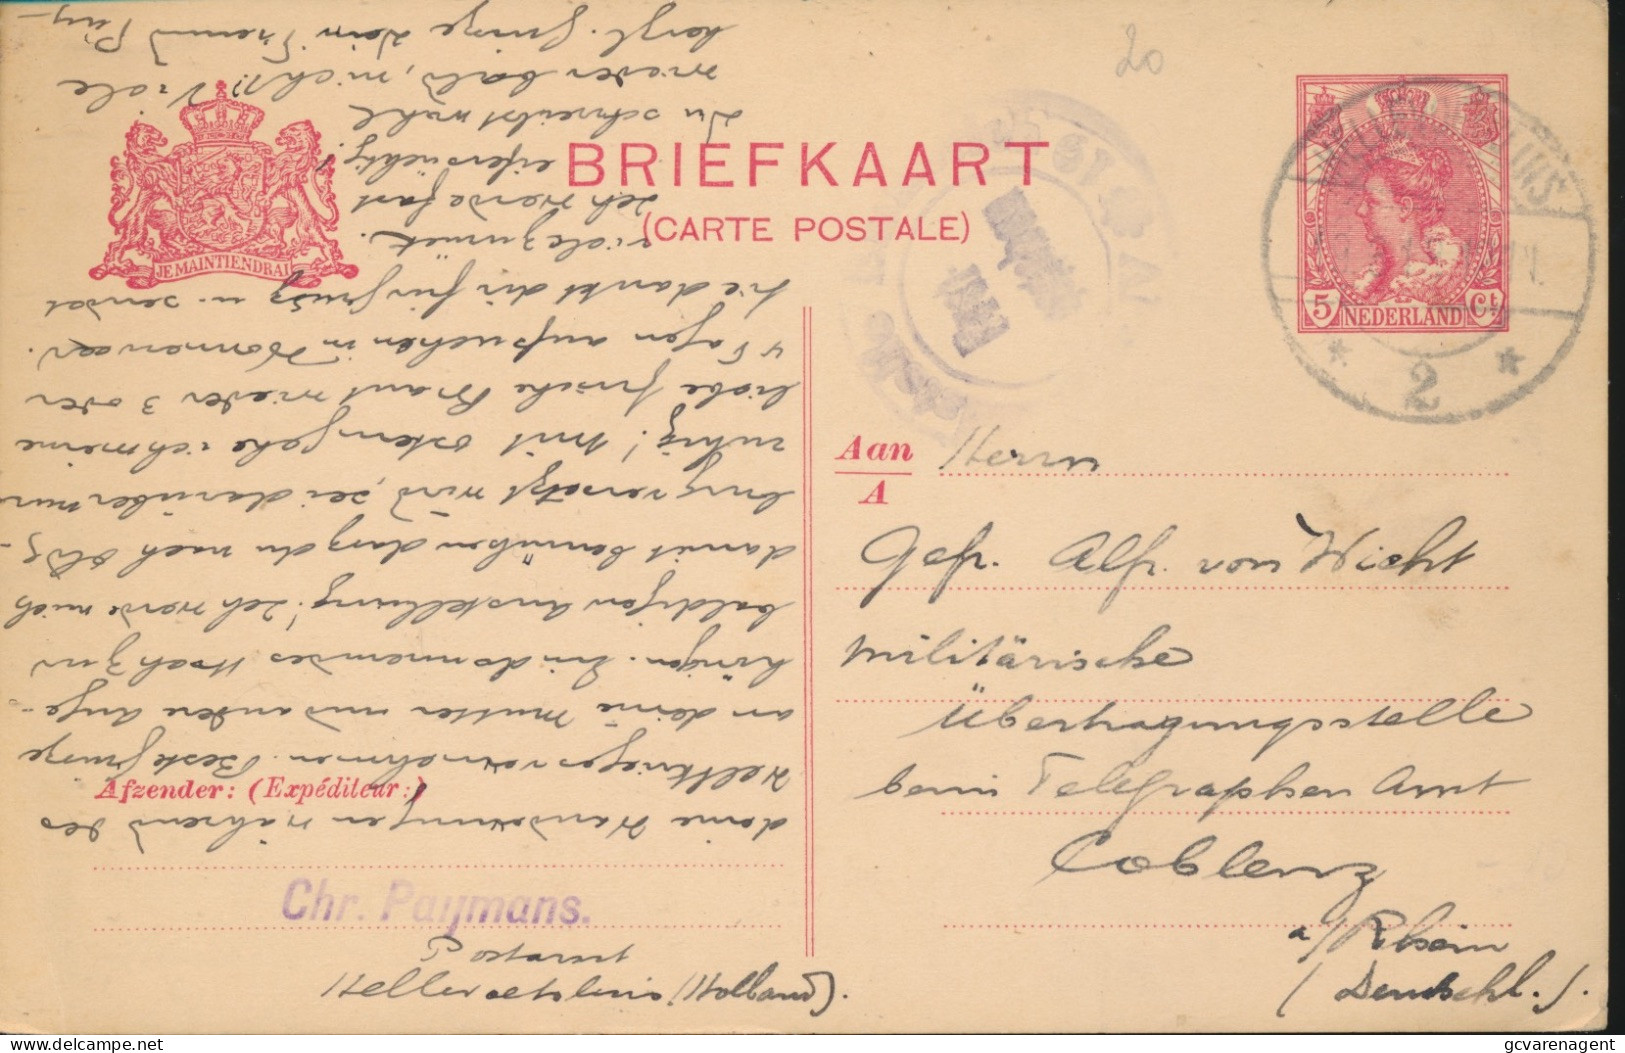 BRIEFKAART 1918 AUSLANDSTELLE FREIGEGEBEN  NAAR MILITAIRISCHE UBERWACHSTELLE  COBLENZ - Covers & Documents